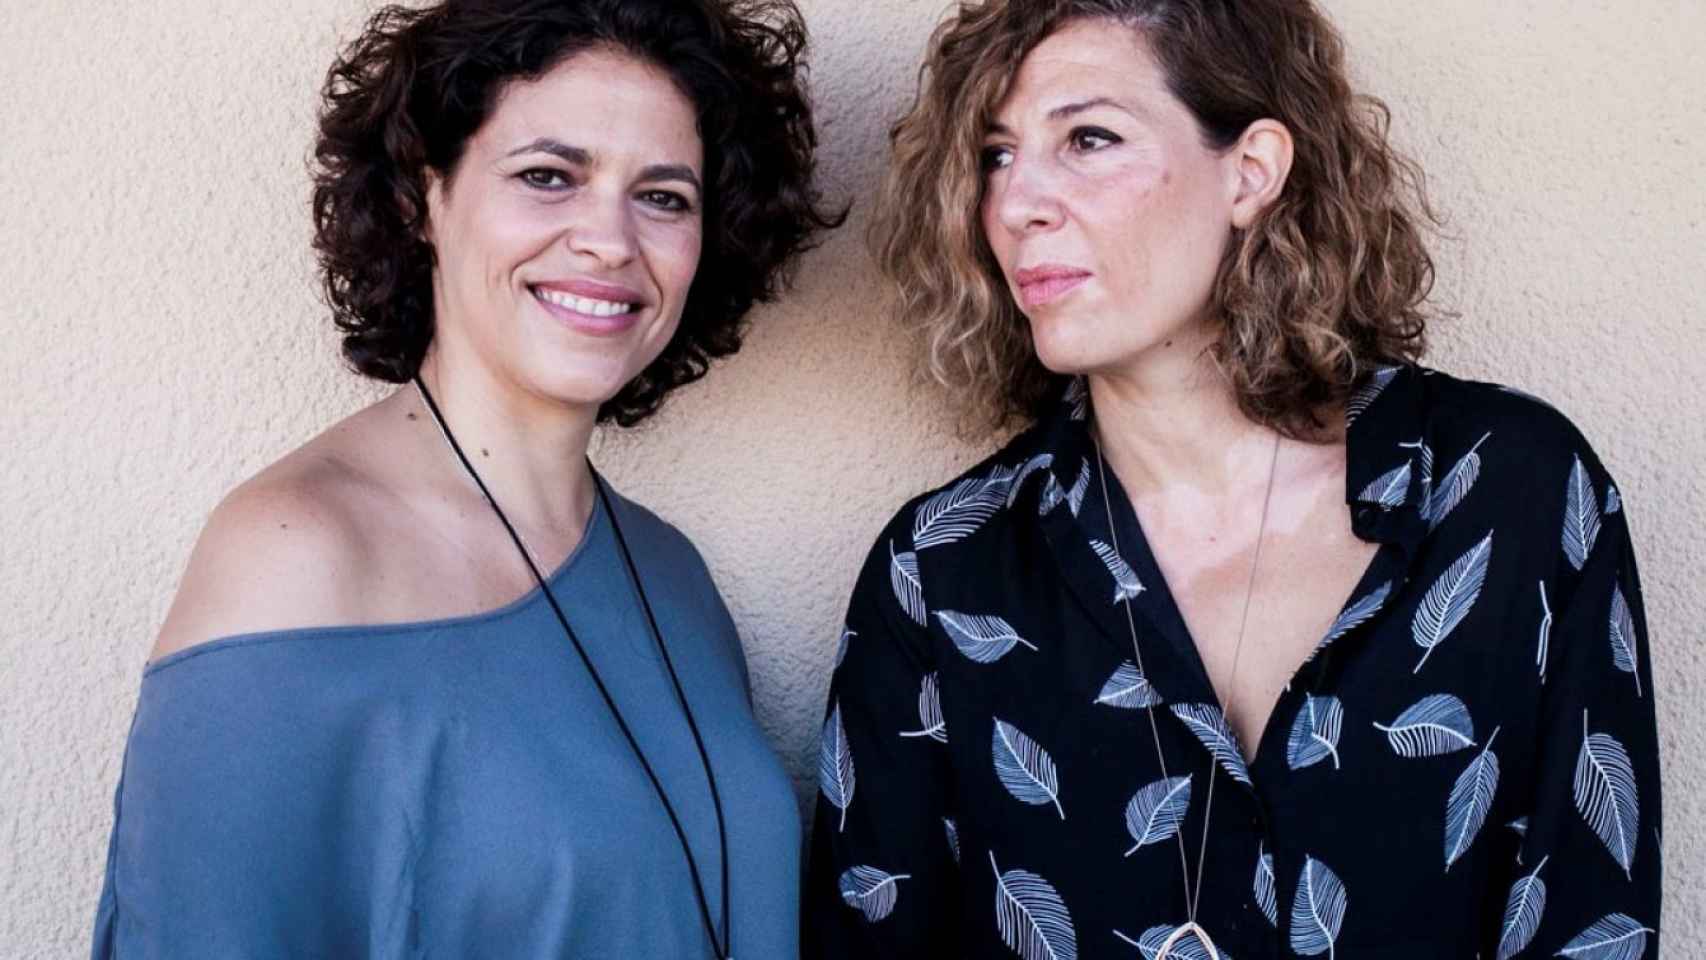 Yolanda Serrano y Eva Leira son dos nombres clave en la televisión y cine en España.